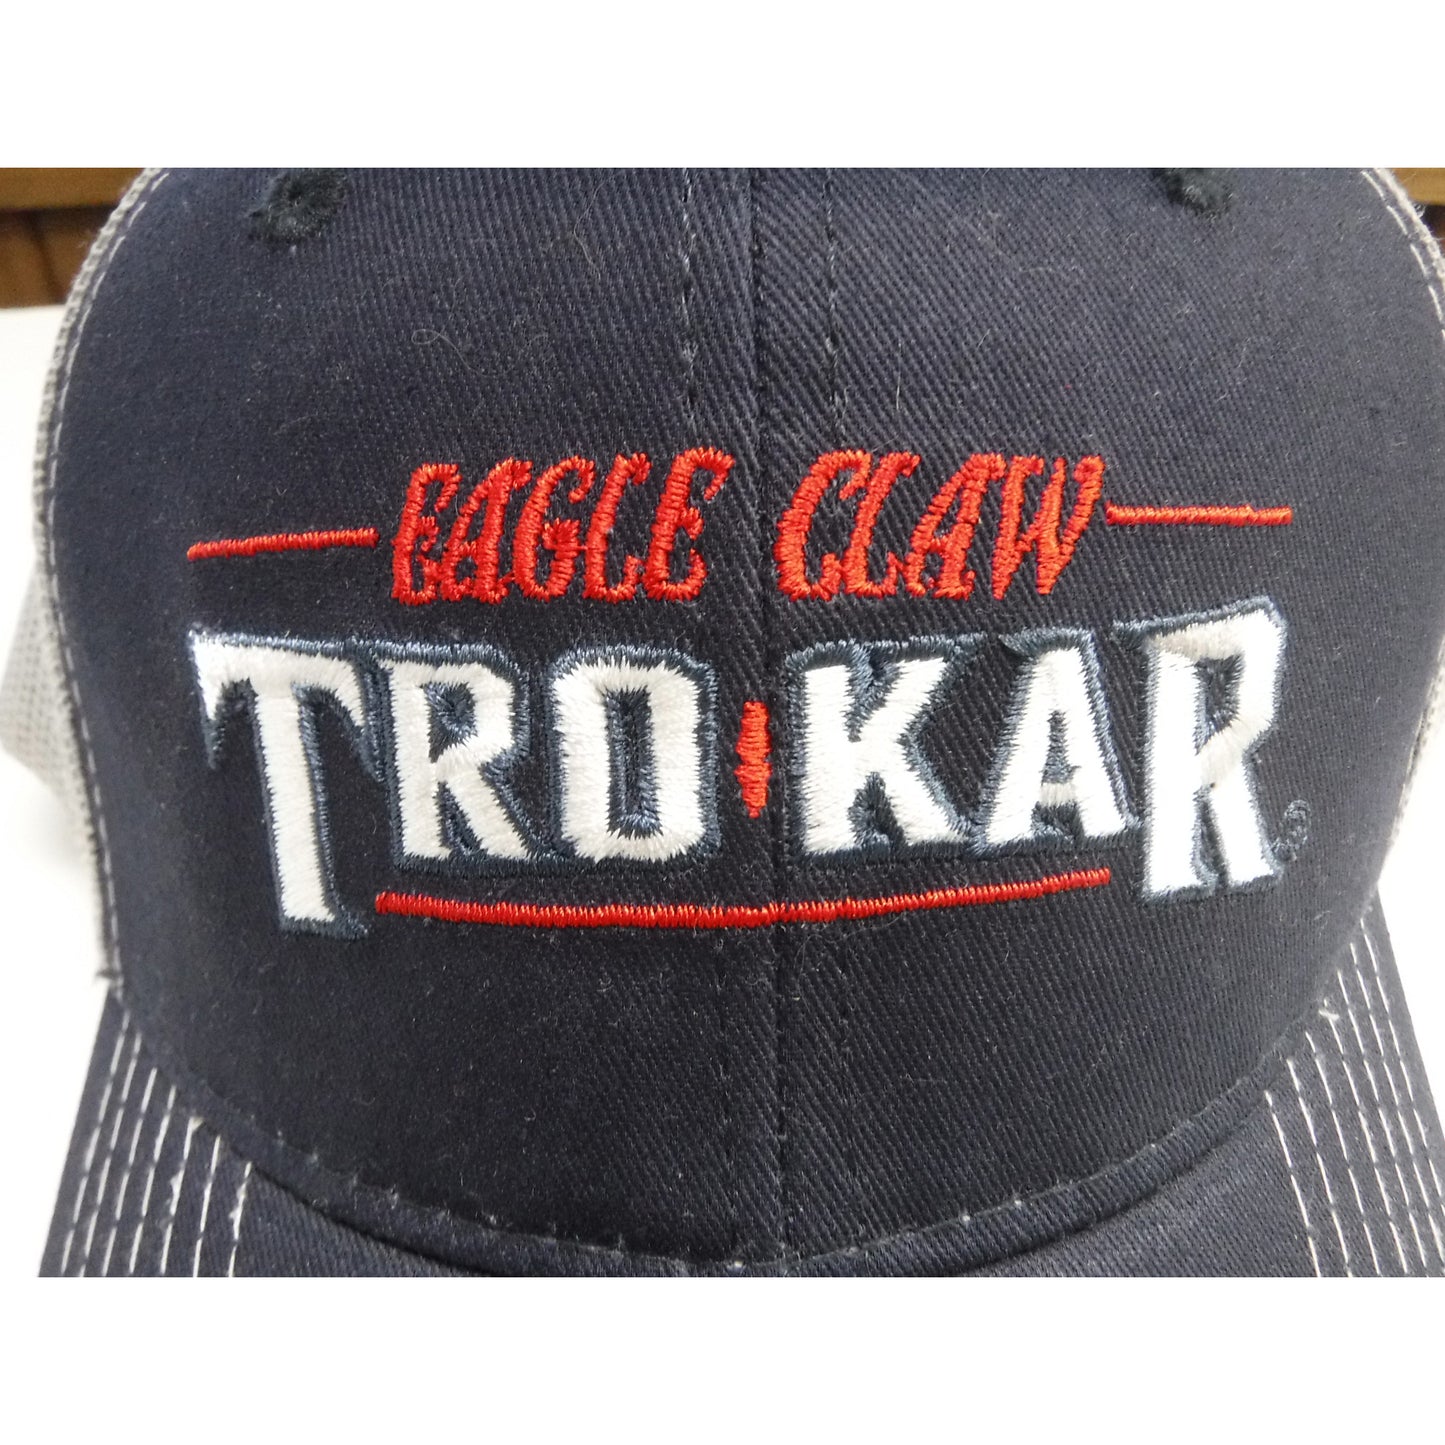 Eagle Claw/ TroKar Hat - Navy Blue/ Gray Mesh